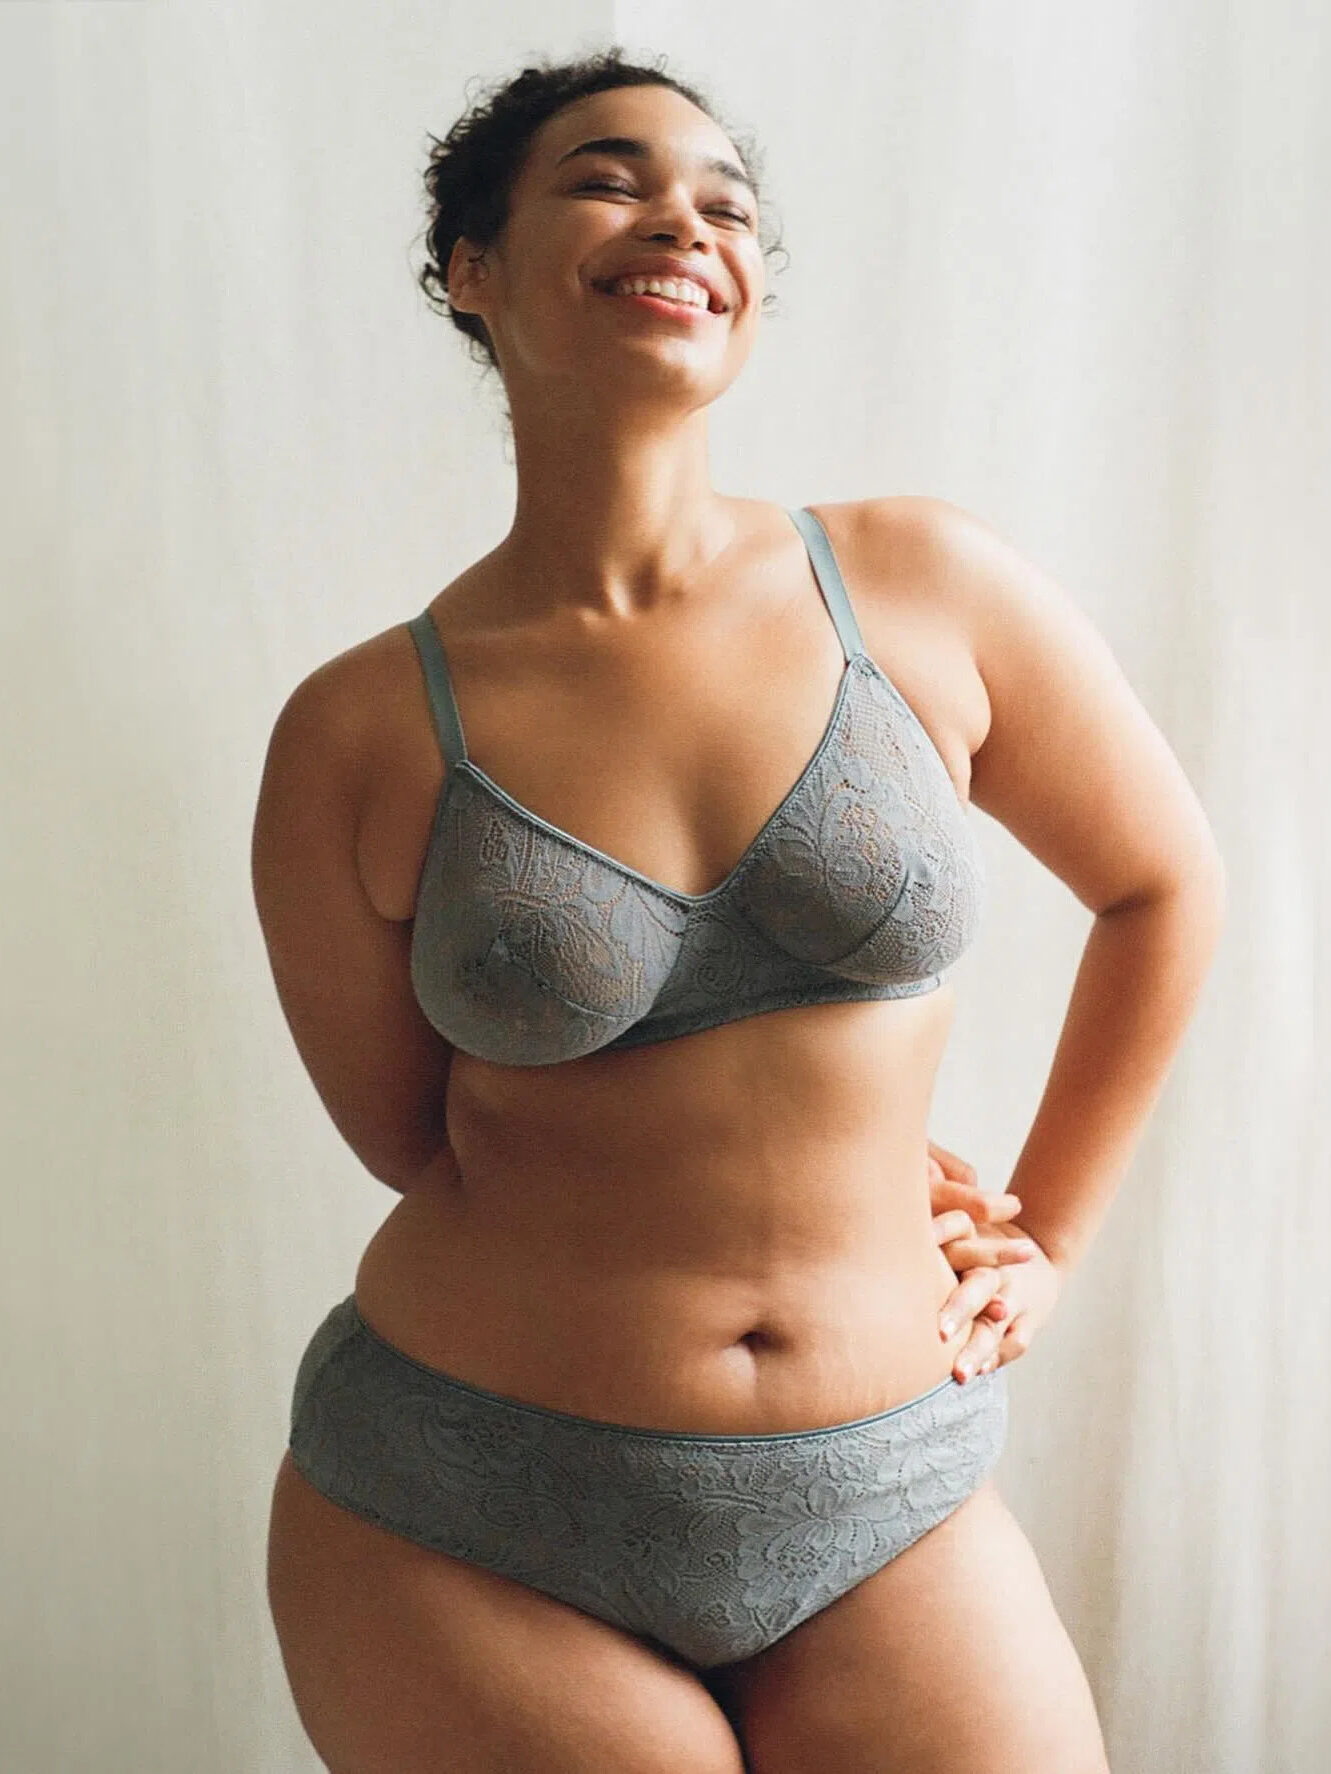 A model wearing a grey two piece organic lingerie set from Araks.